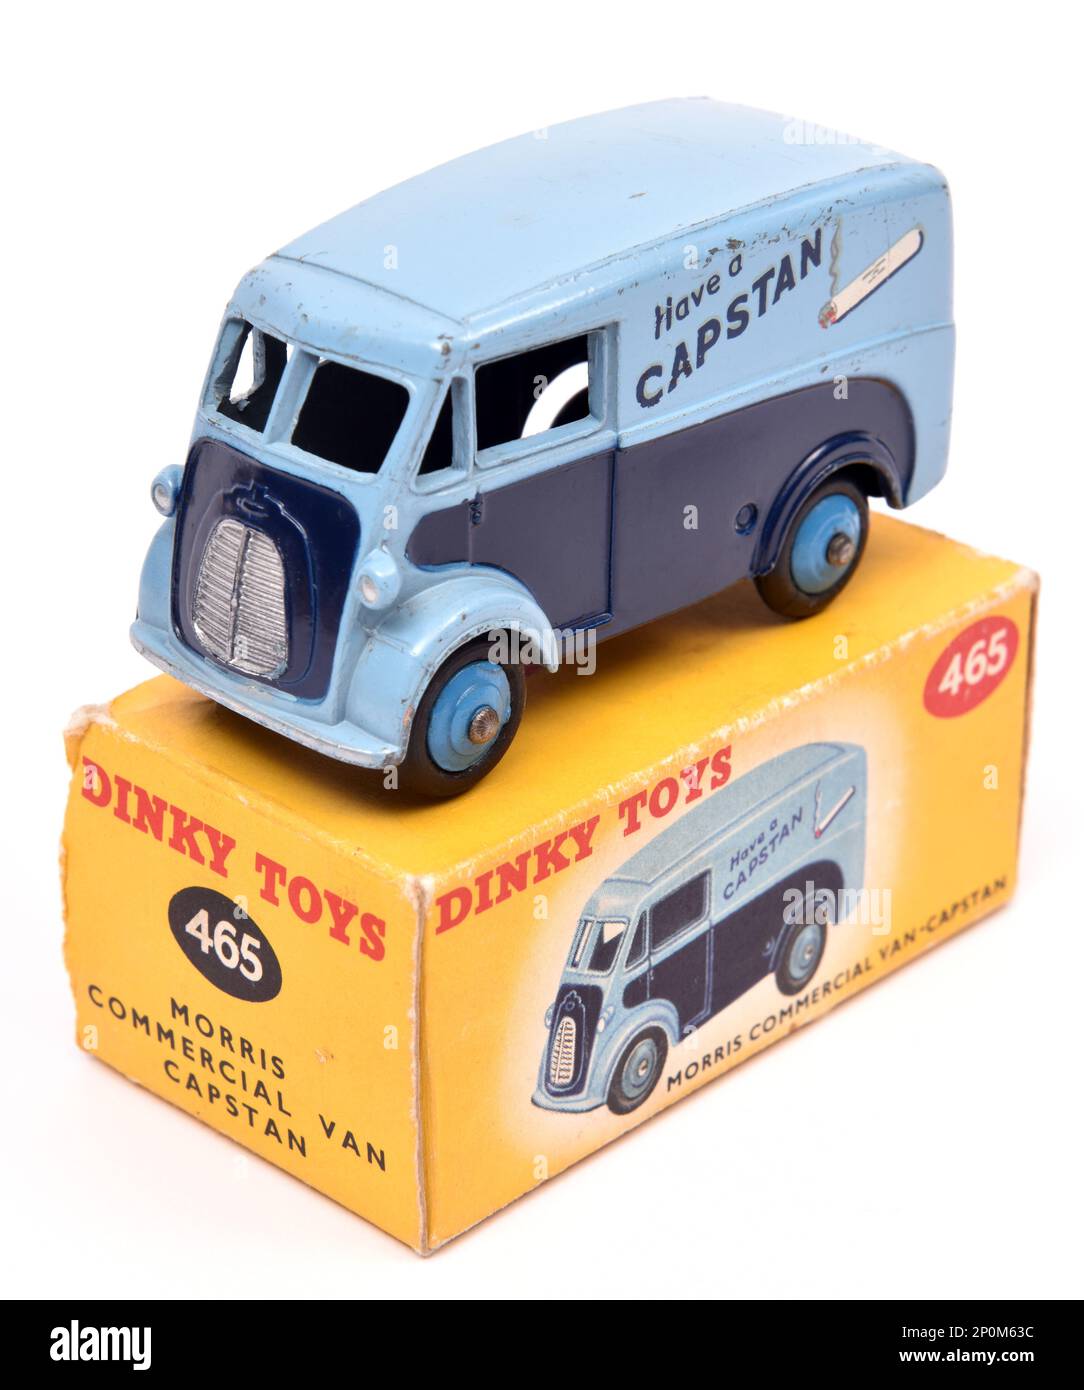 Dinky Toys 465 Morris commercial Van publicité cabestan cigarettes Banque D'Images